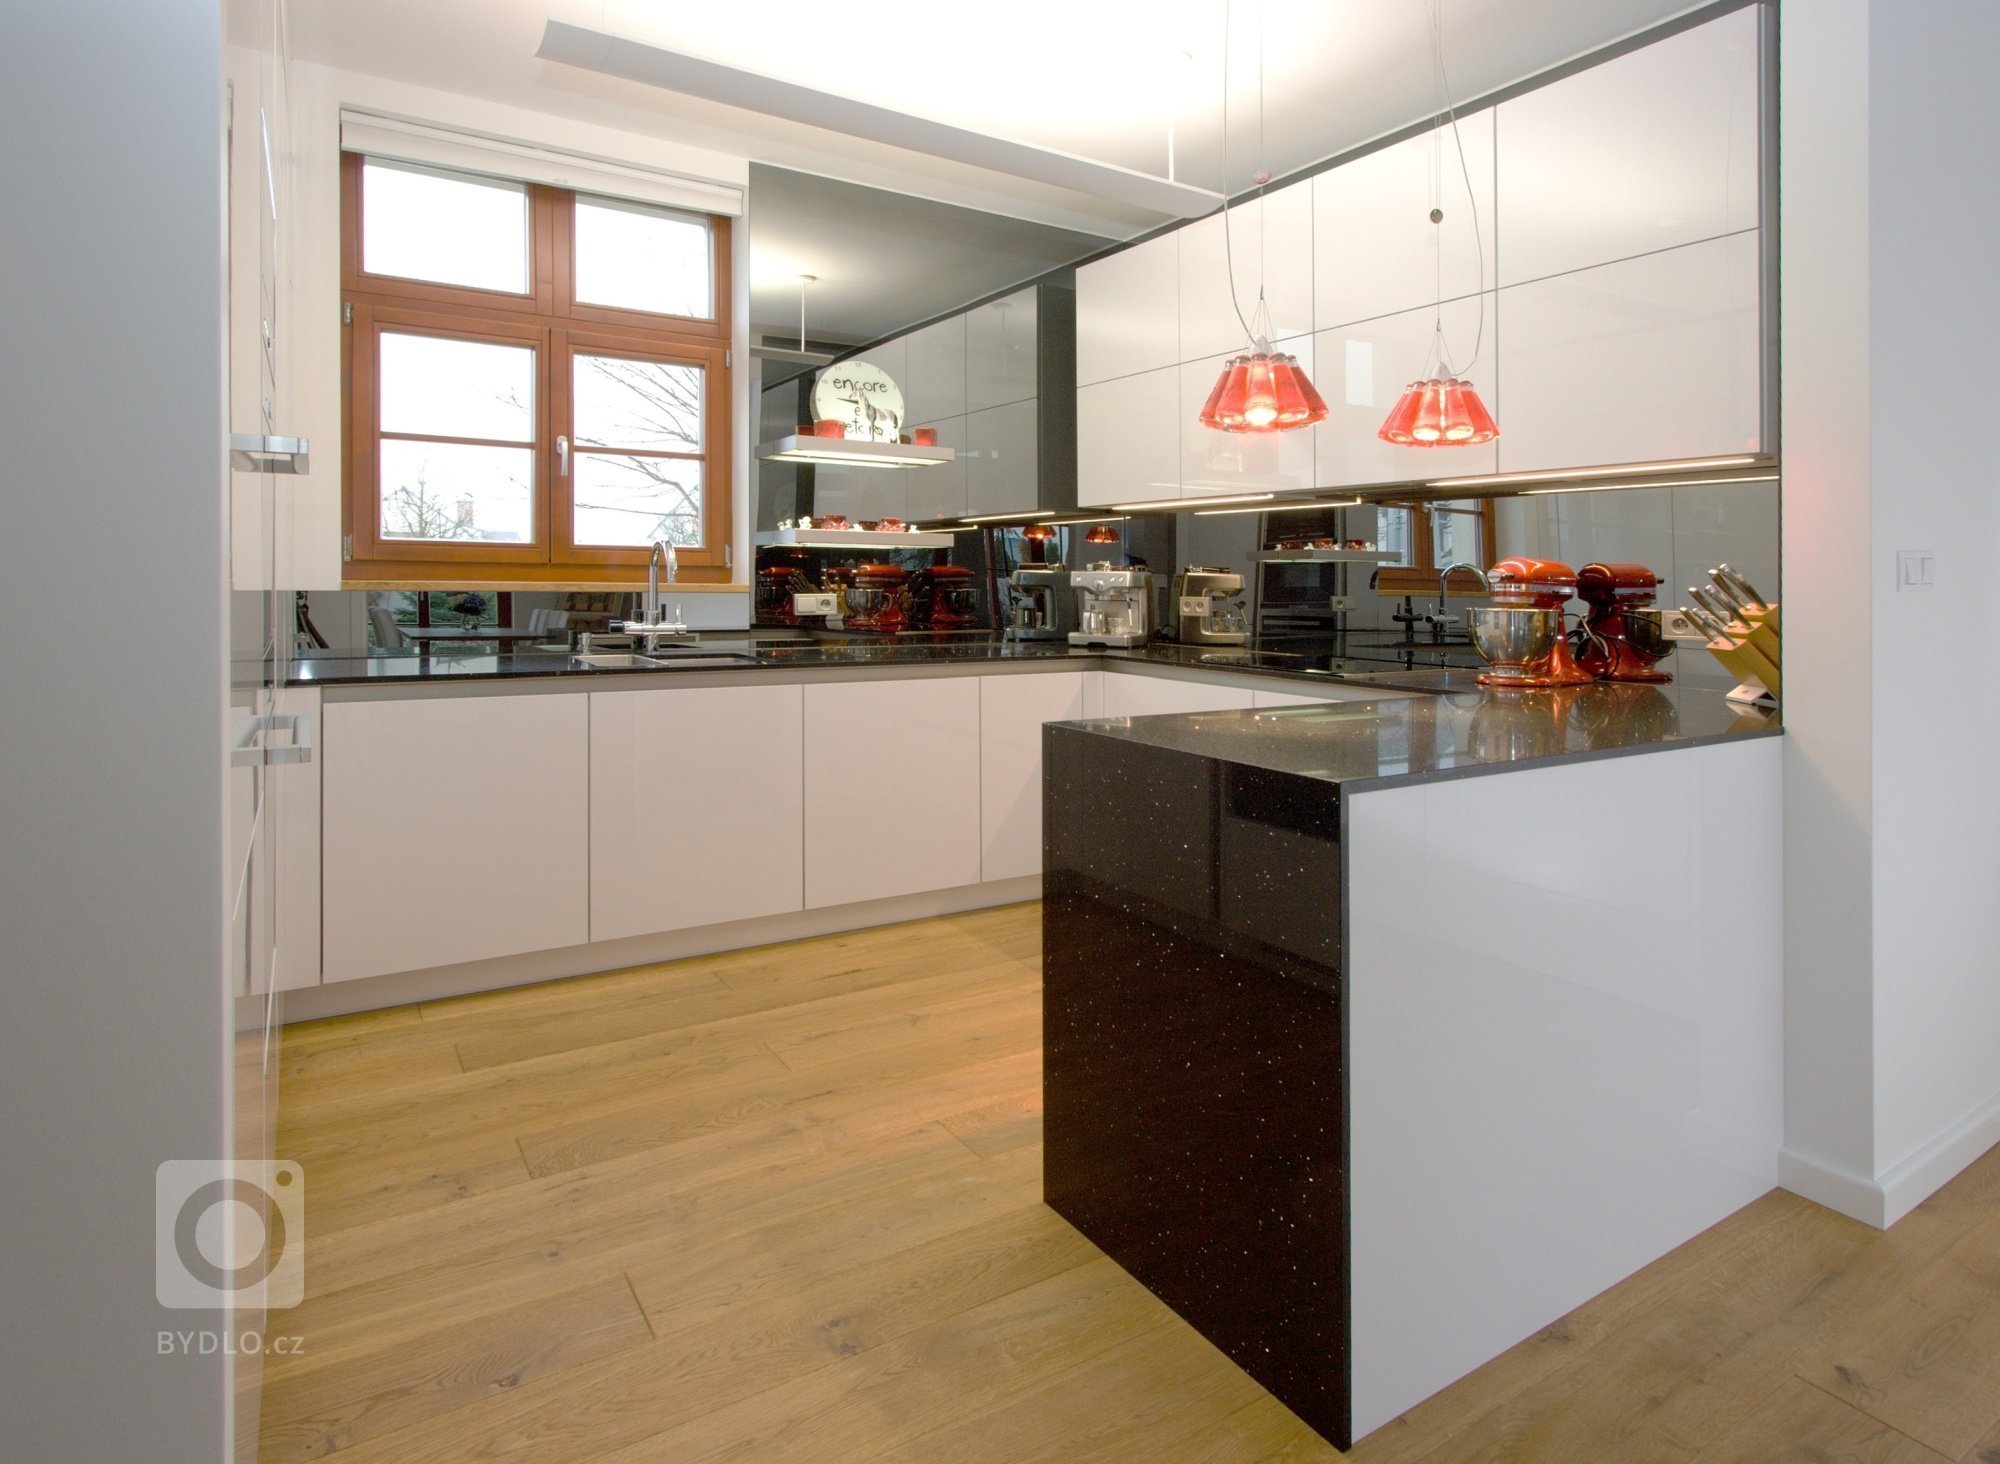 Kuchyň BEECK a vybavení interiéru rodinného domu. Provedení kuchyně je polygloss XENO 3062 X127 Arctic white, bezúchytkový systém nerez, doplňky Blanco,…